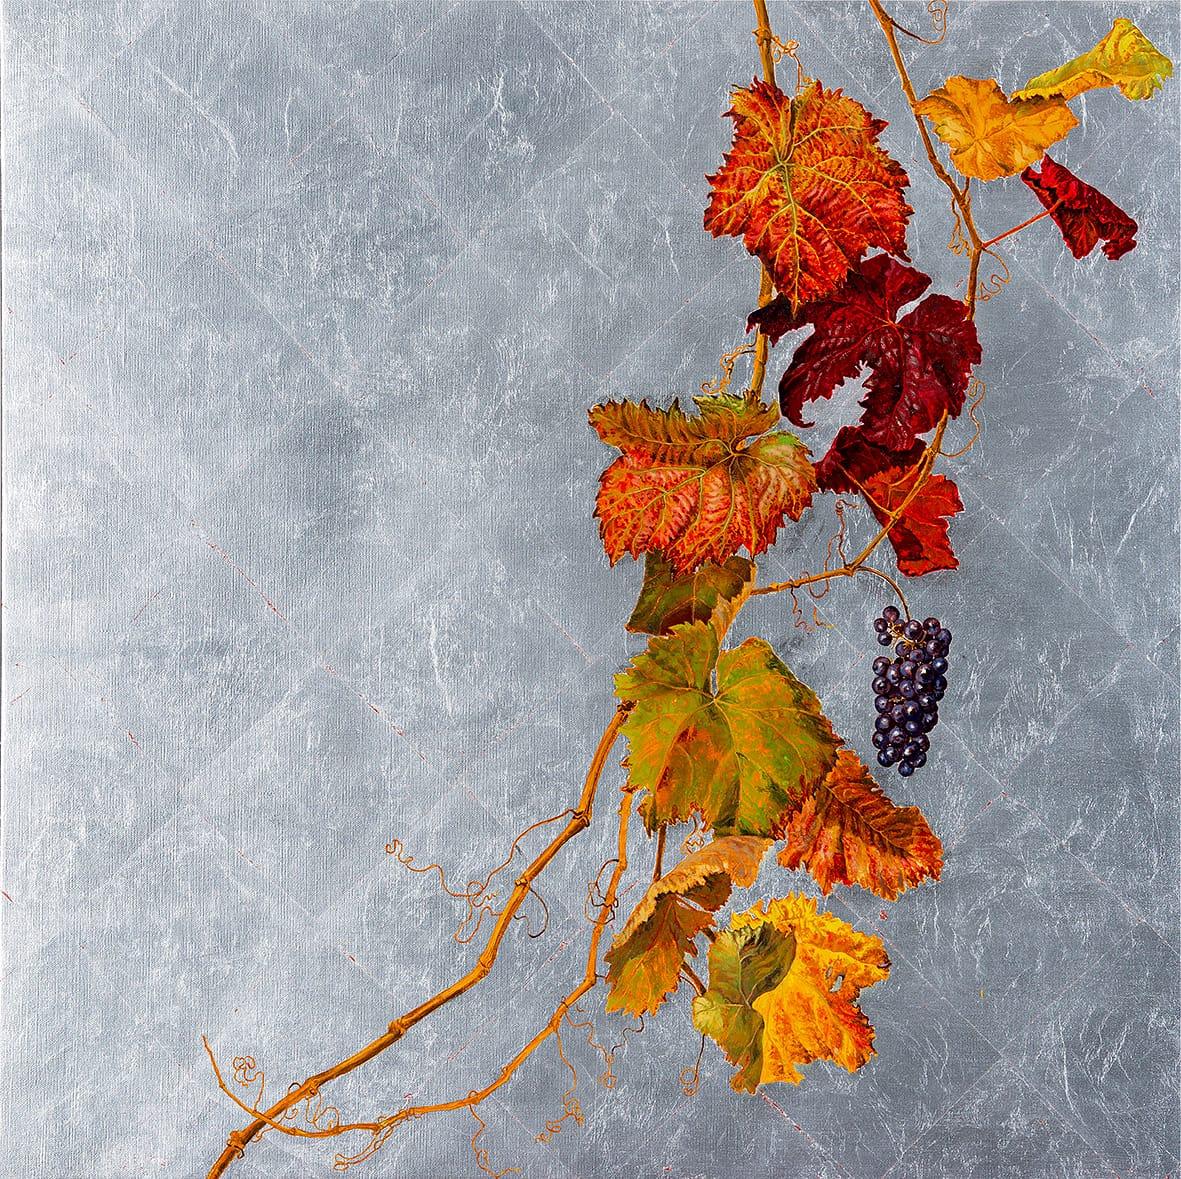 Figurative Painting Margherita Leoni - Branche de vigne avec grappe violette et feuilles rouges - peinture à l'huile sur fond argenté 